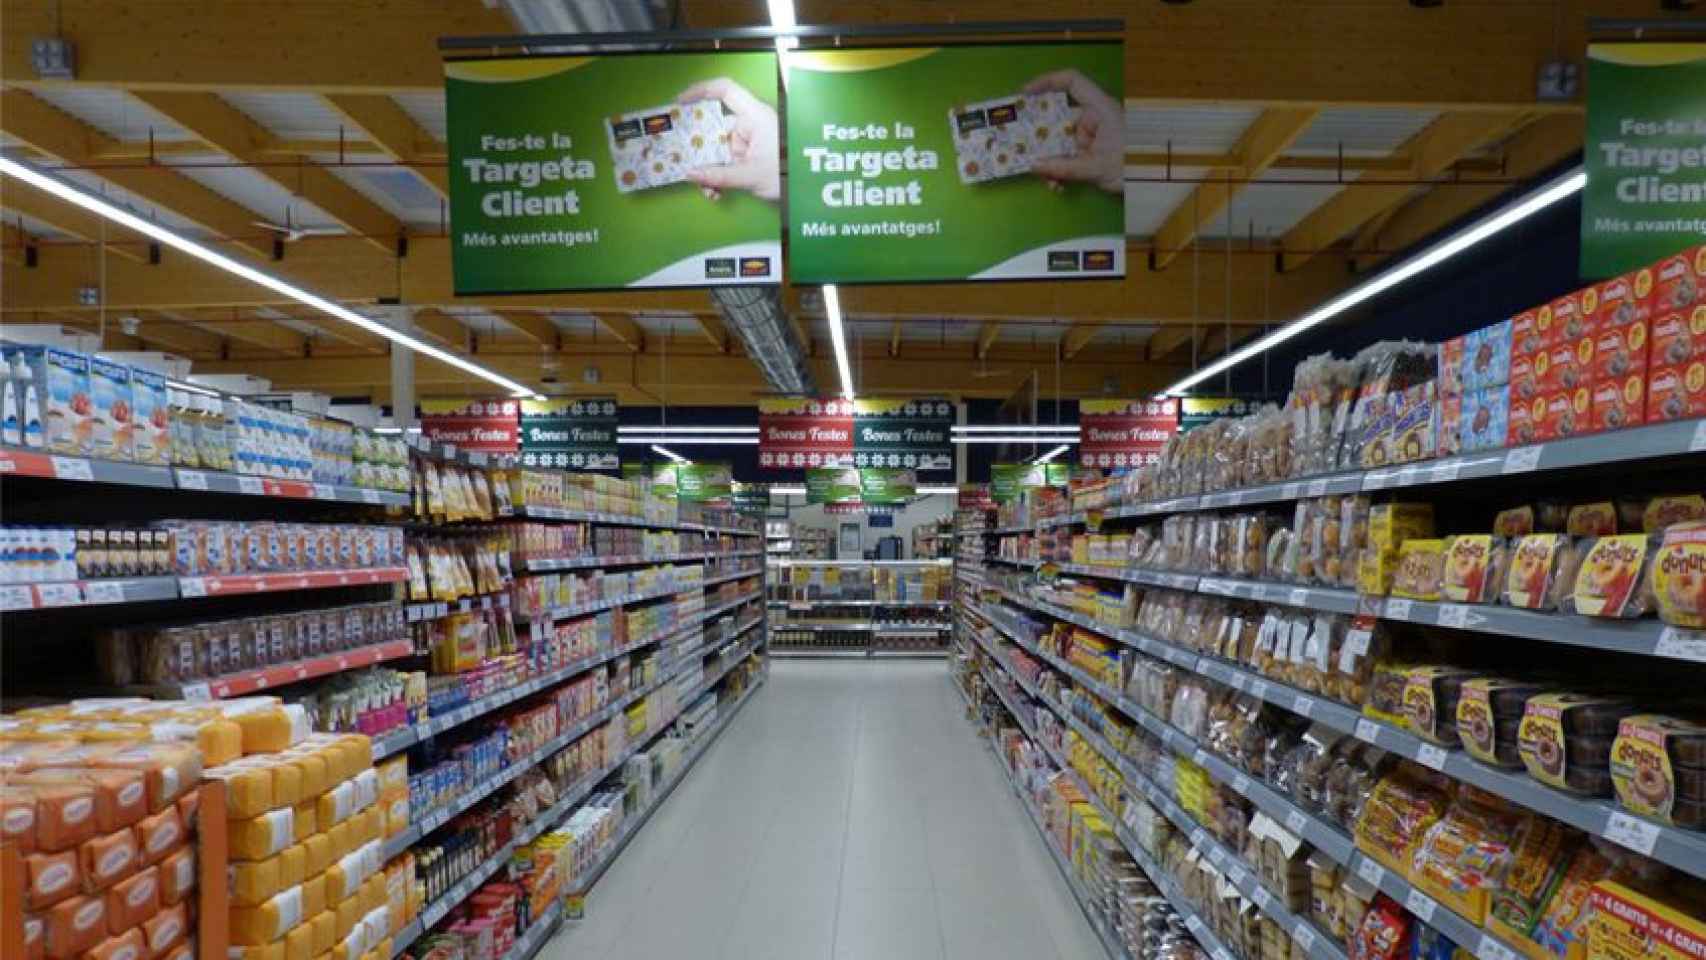 Inyección de capital a los supermercados Bonpreu / CG